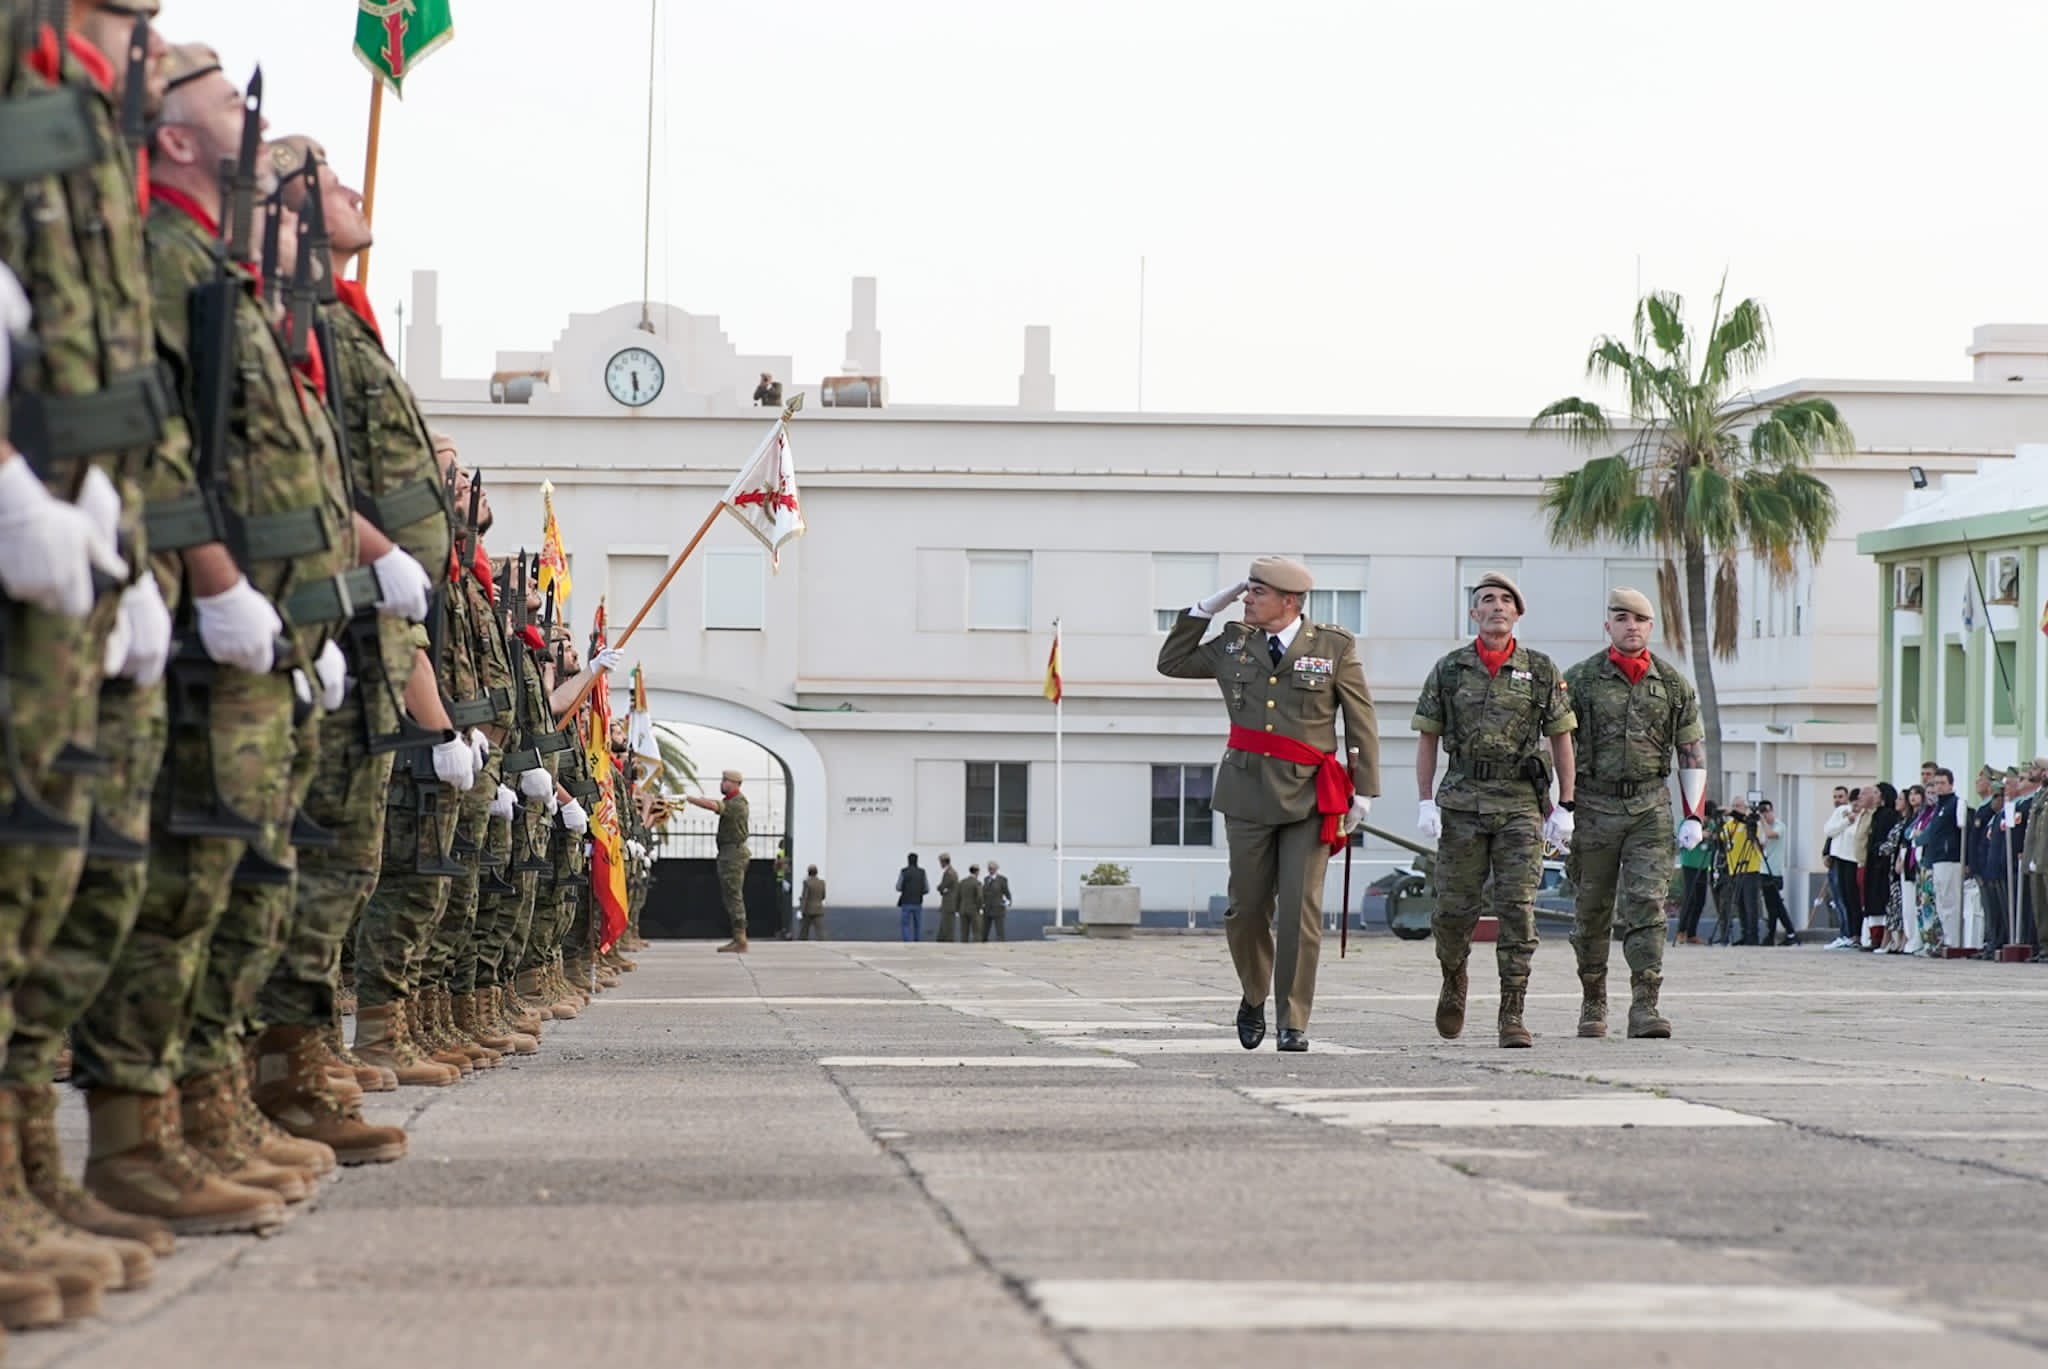 XV Aniversario de la Brigada "Canarias" XVI